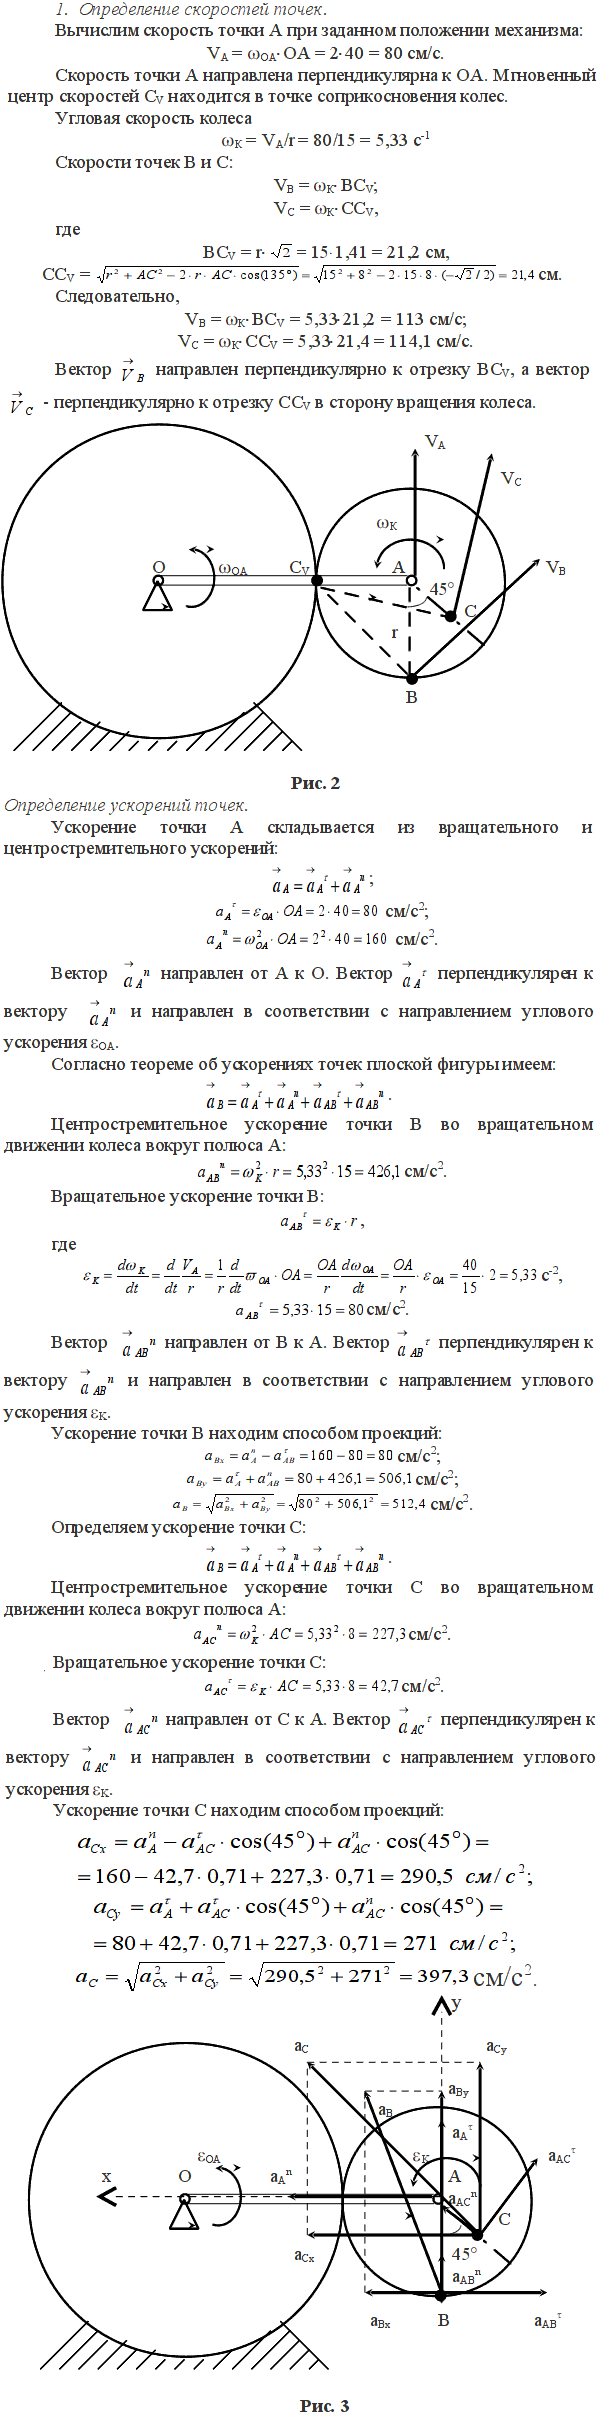 Задание К.3 вариант 1. OA=40 см, r=15 см, AC=8 см, ωOA=2 рад/с, εOA=2 рад/с^2